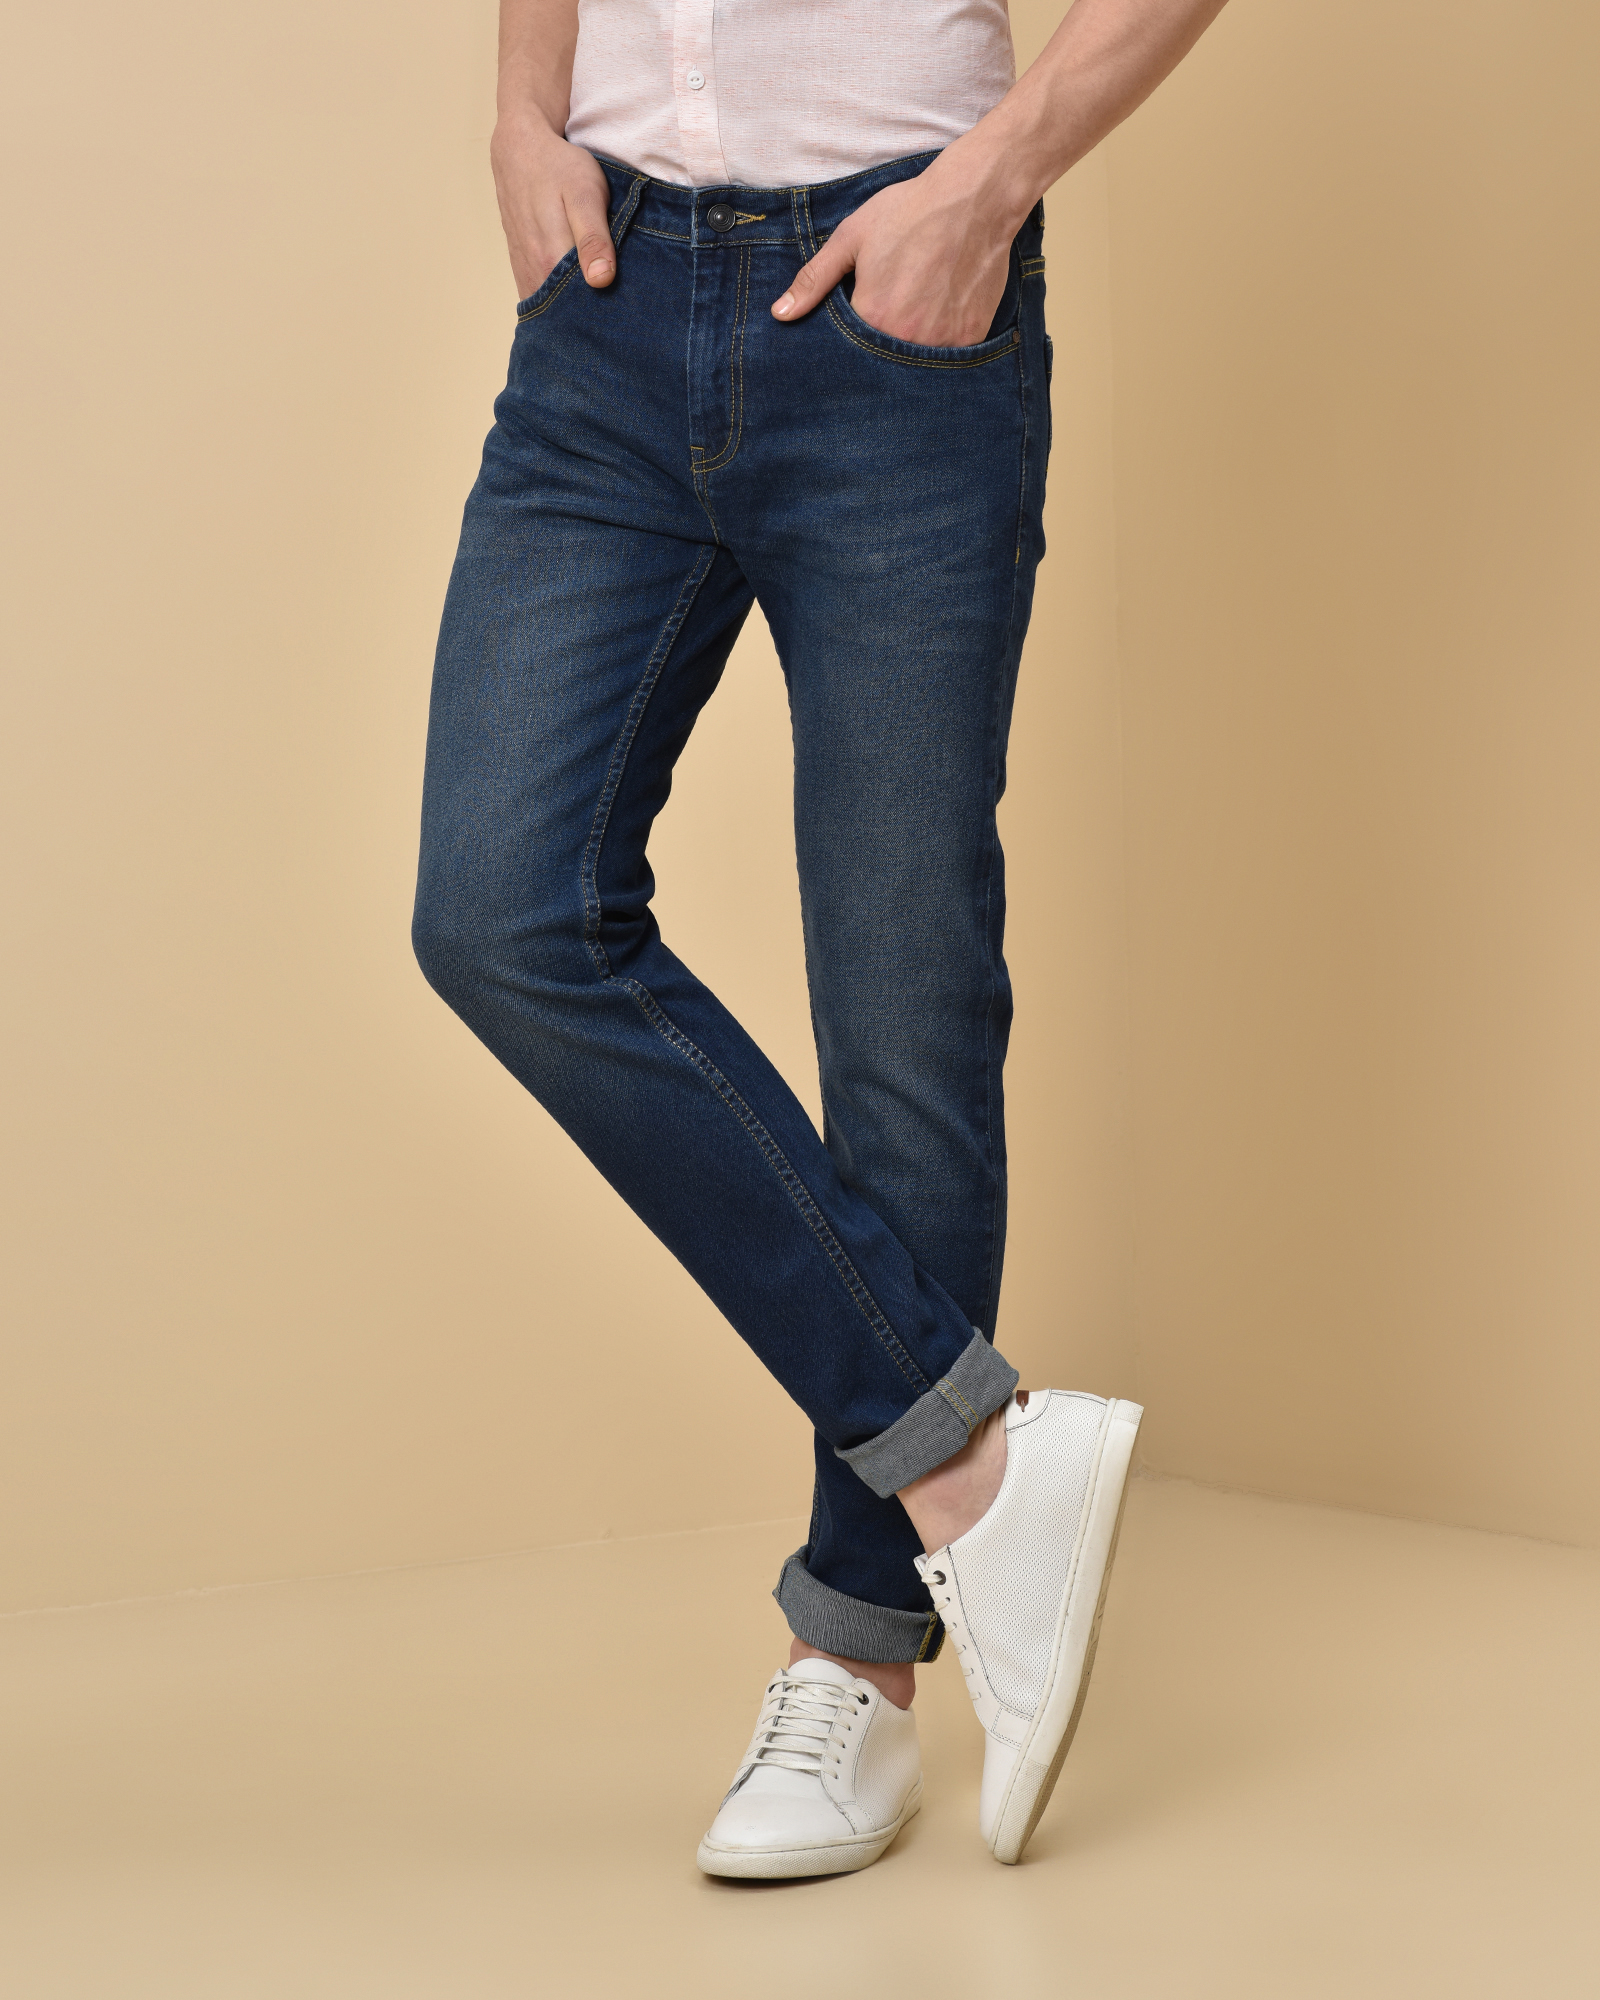 short jeans abercrombie